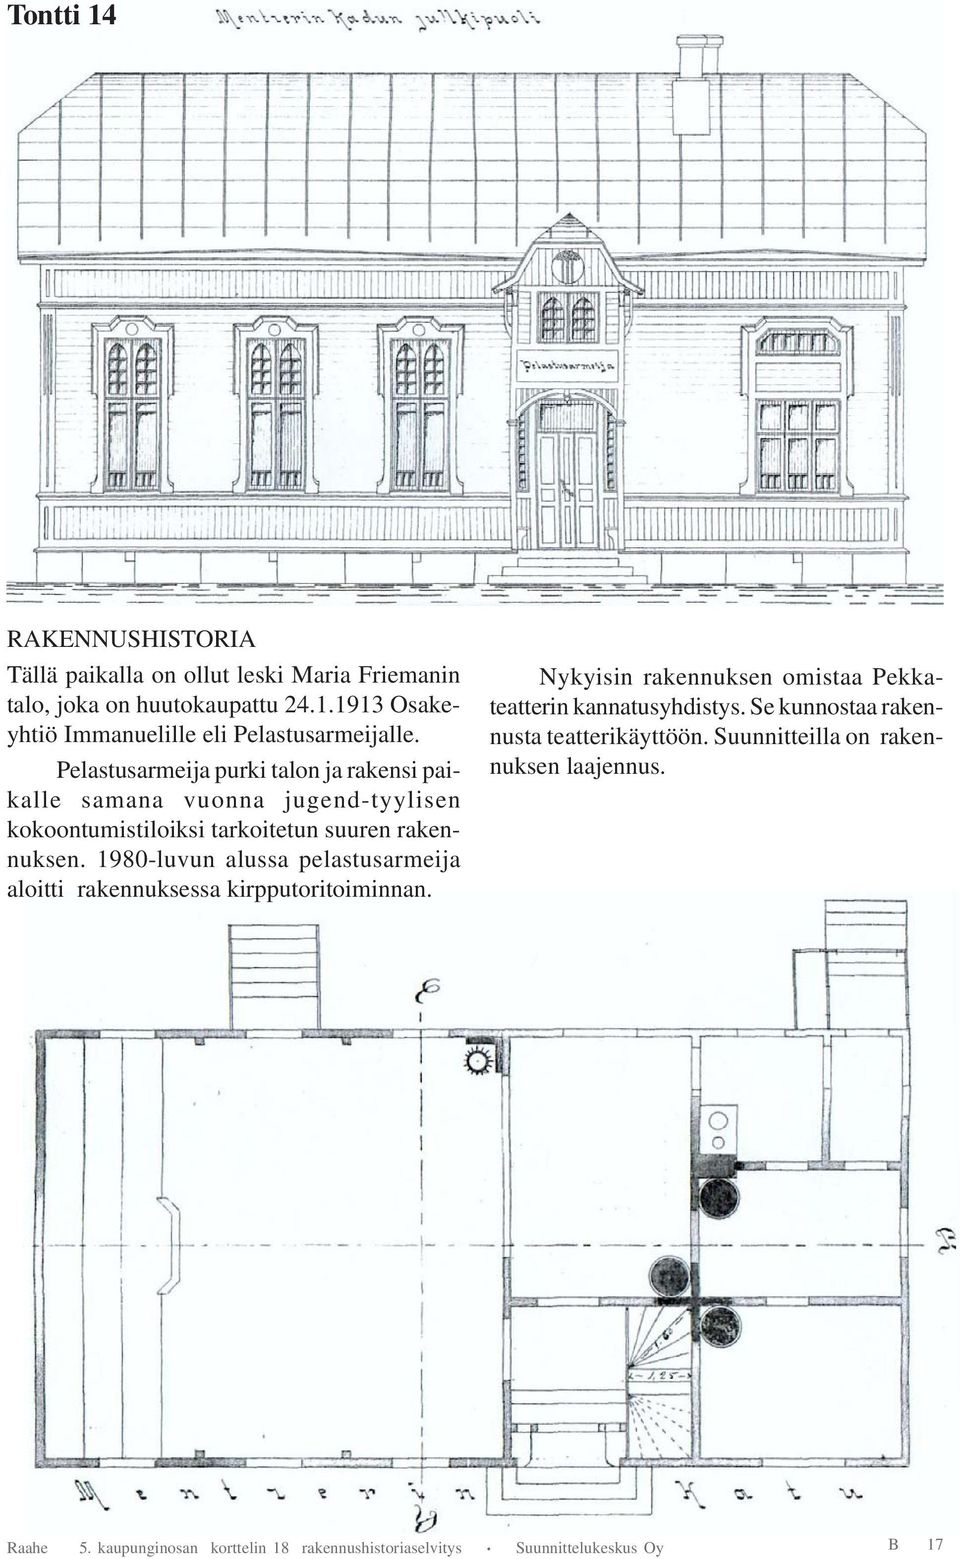 1980-luvun alussa pelastusarmeija aloitti rakennuksessa kirpputoritoiminnan. Nykyisin rakennuksen omistaa Pekkateatterin kannatusyhdistys.